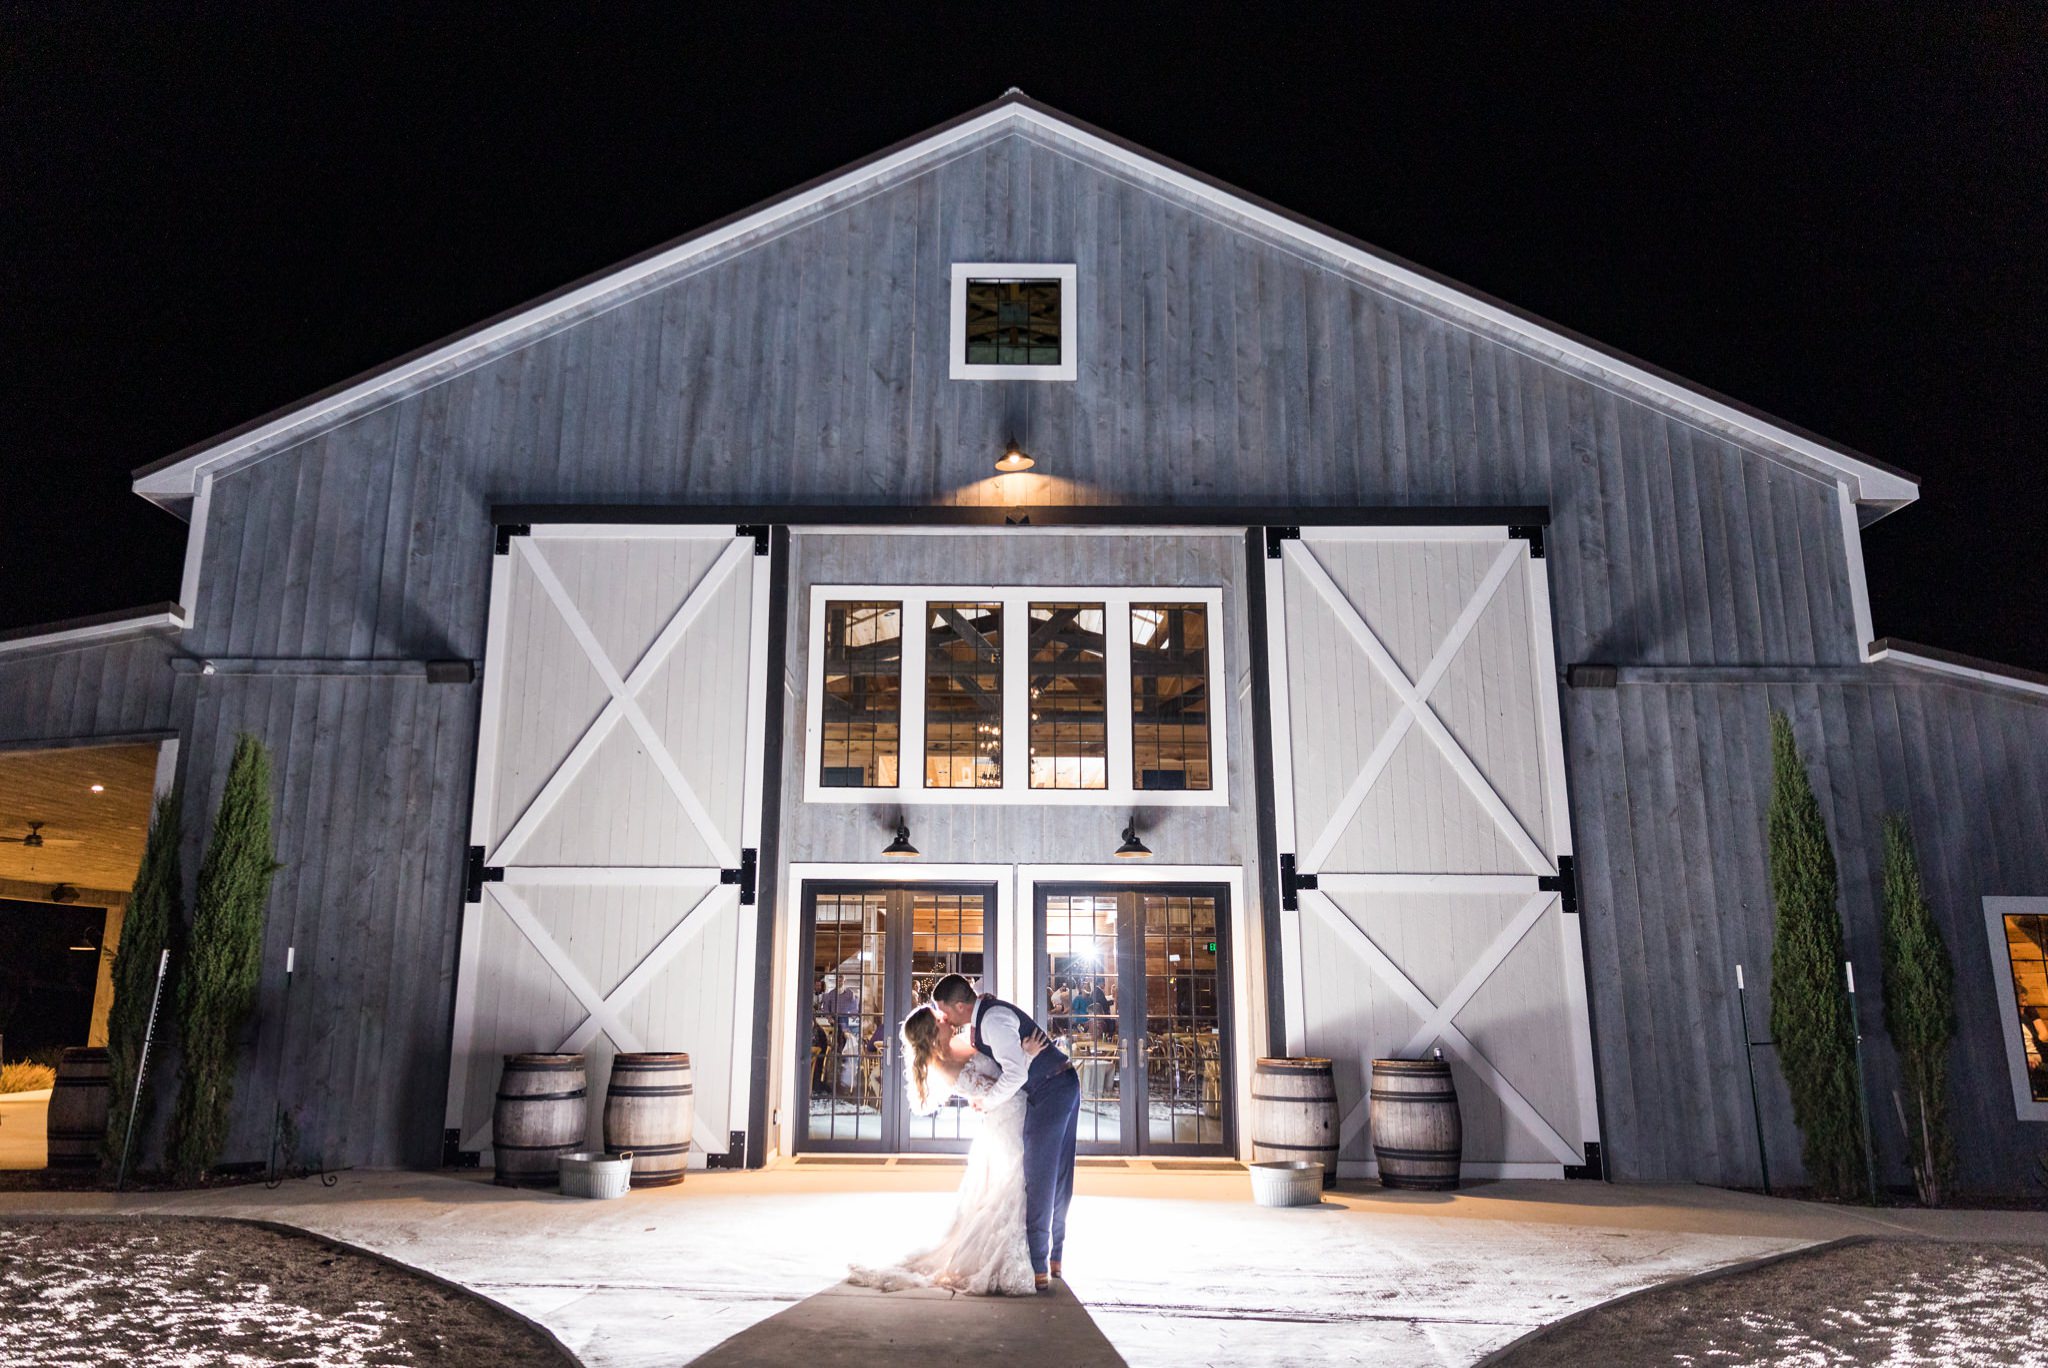 A Burgundy & Navy Wedding at the Barn at Swallows Eve in Fredericksburg, TX by Dawn Elizabeth Studios, Fredericksburg Wedding Photographer